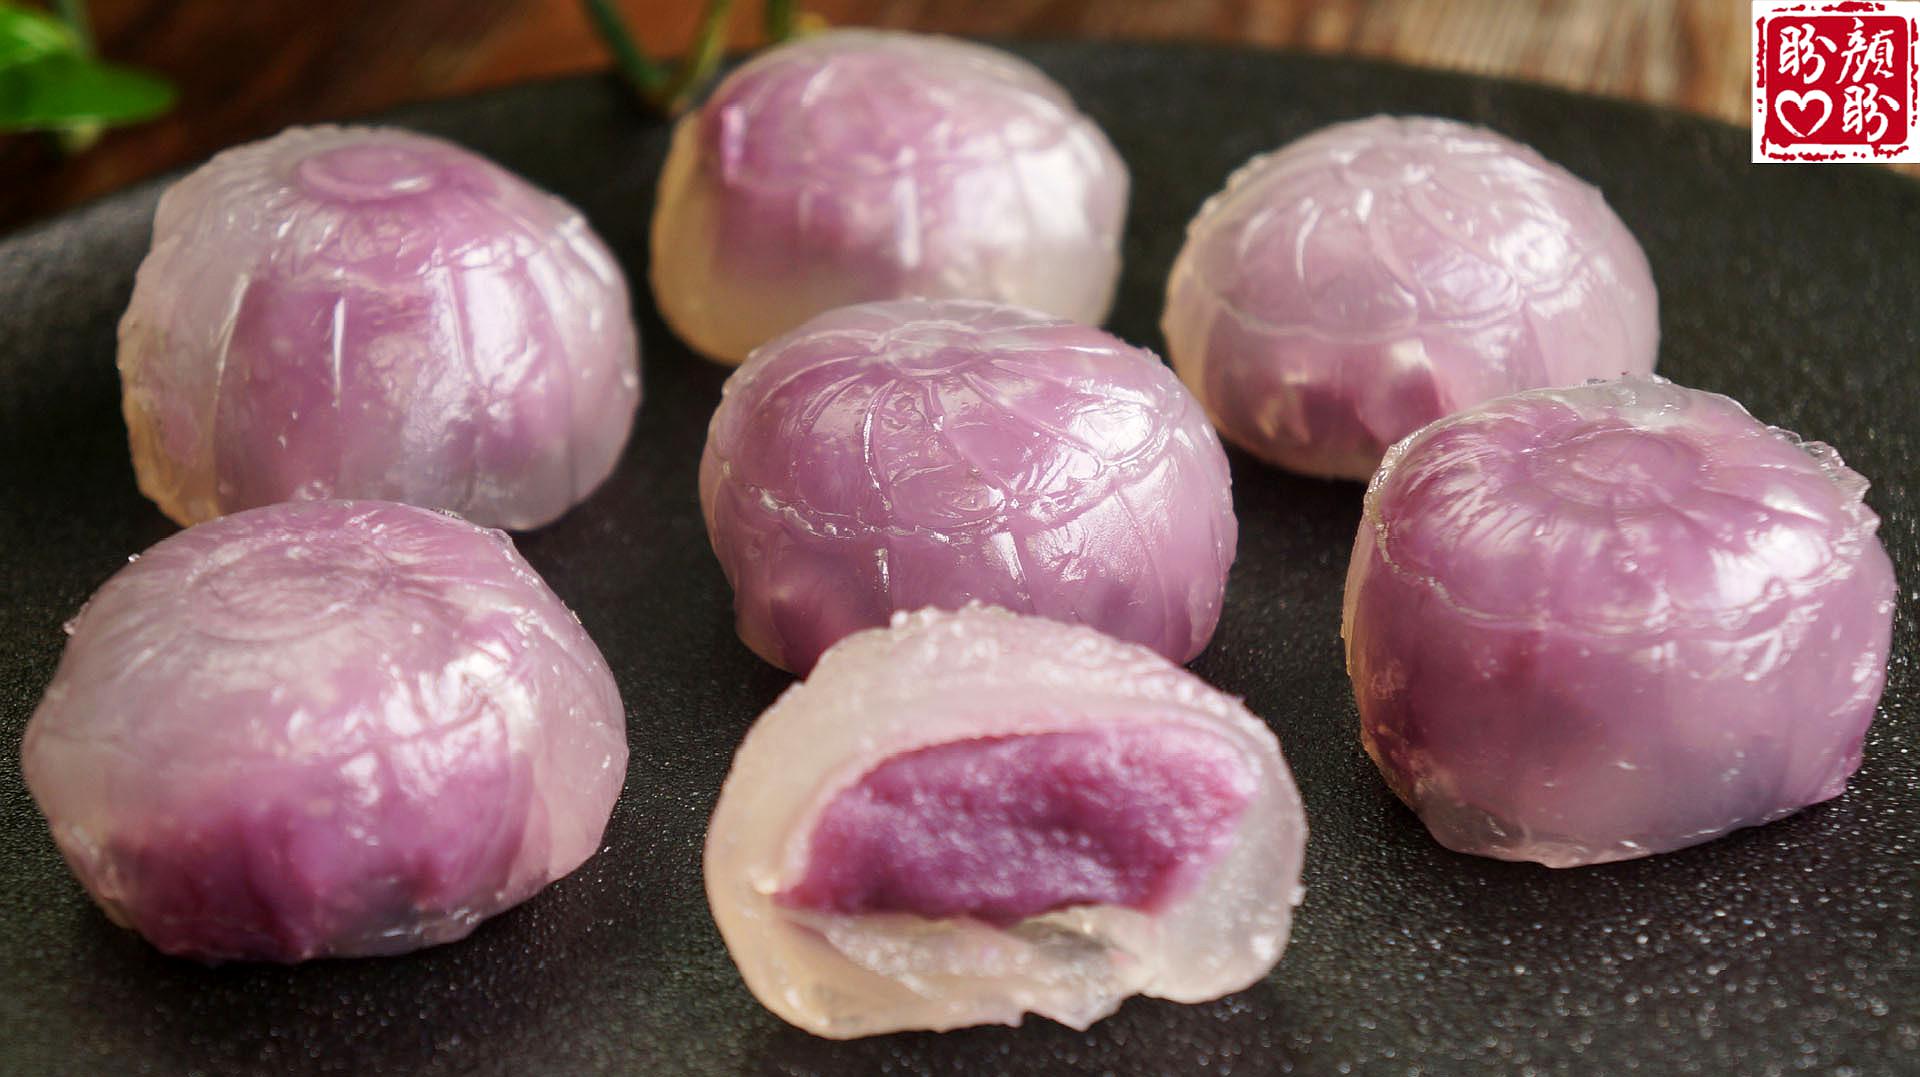 水晶紫薯汤圆,水晶紫薯汤圆的家常做法 - 美食杰水晶紫薯汤圆做法大全